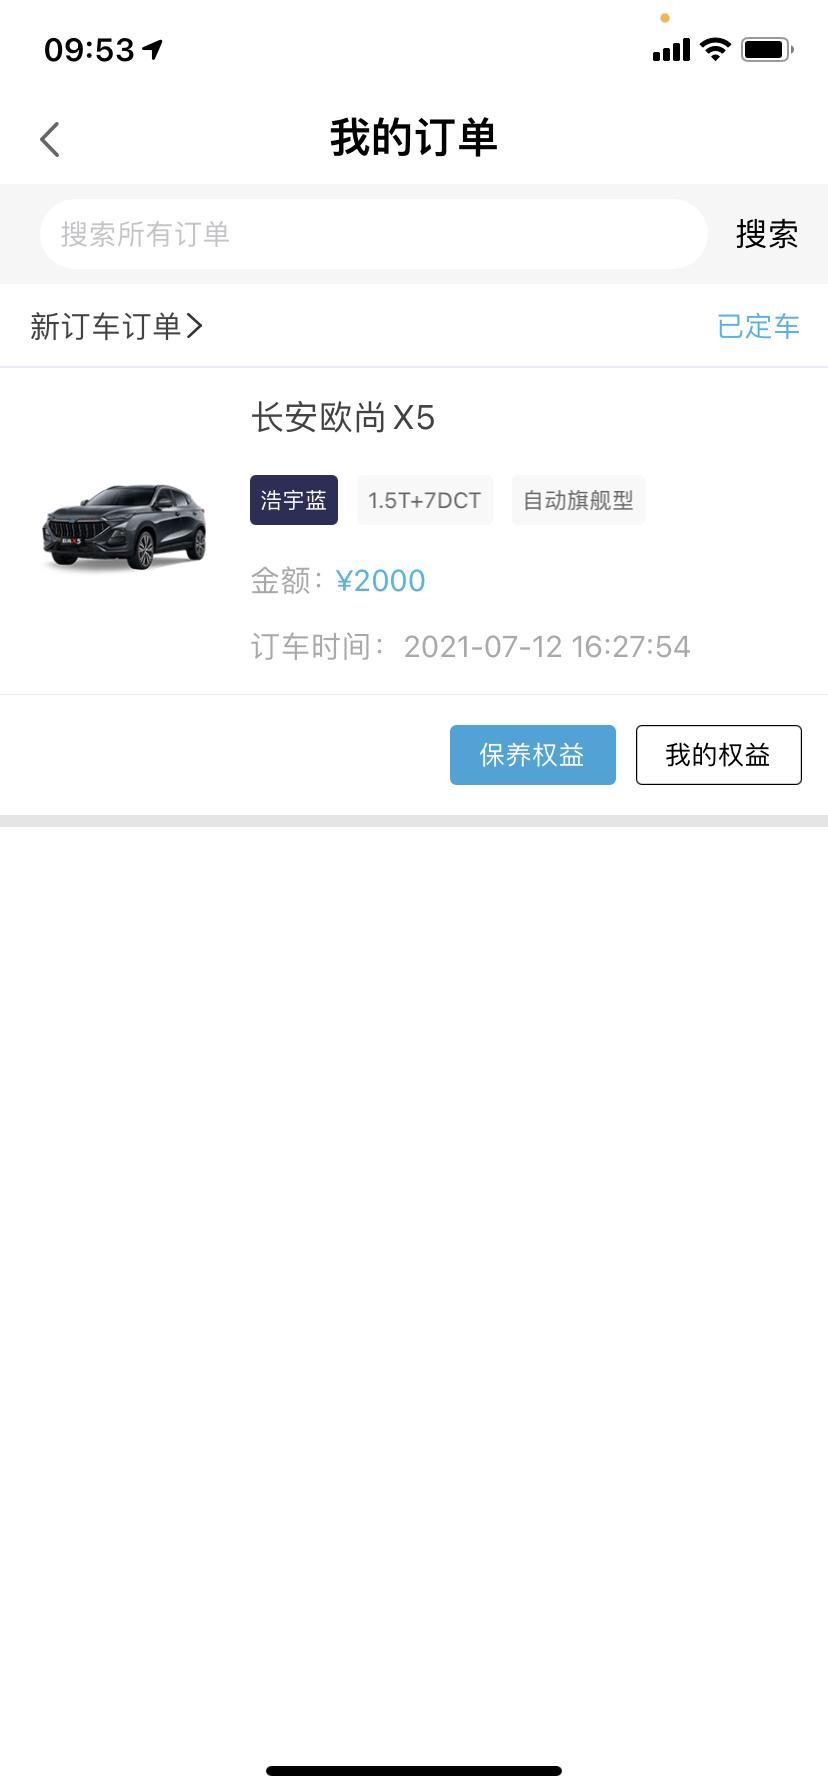 长安欧尚x5 现在广东江门买欧尚X5还要等这么久么？7.12订车，现在还没消息！如果新车出厂了，在这个订单的订单状态里能显示么？